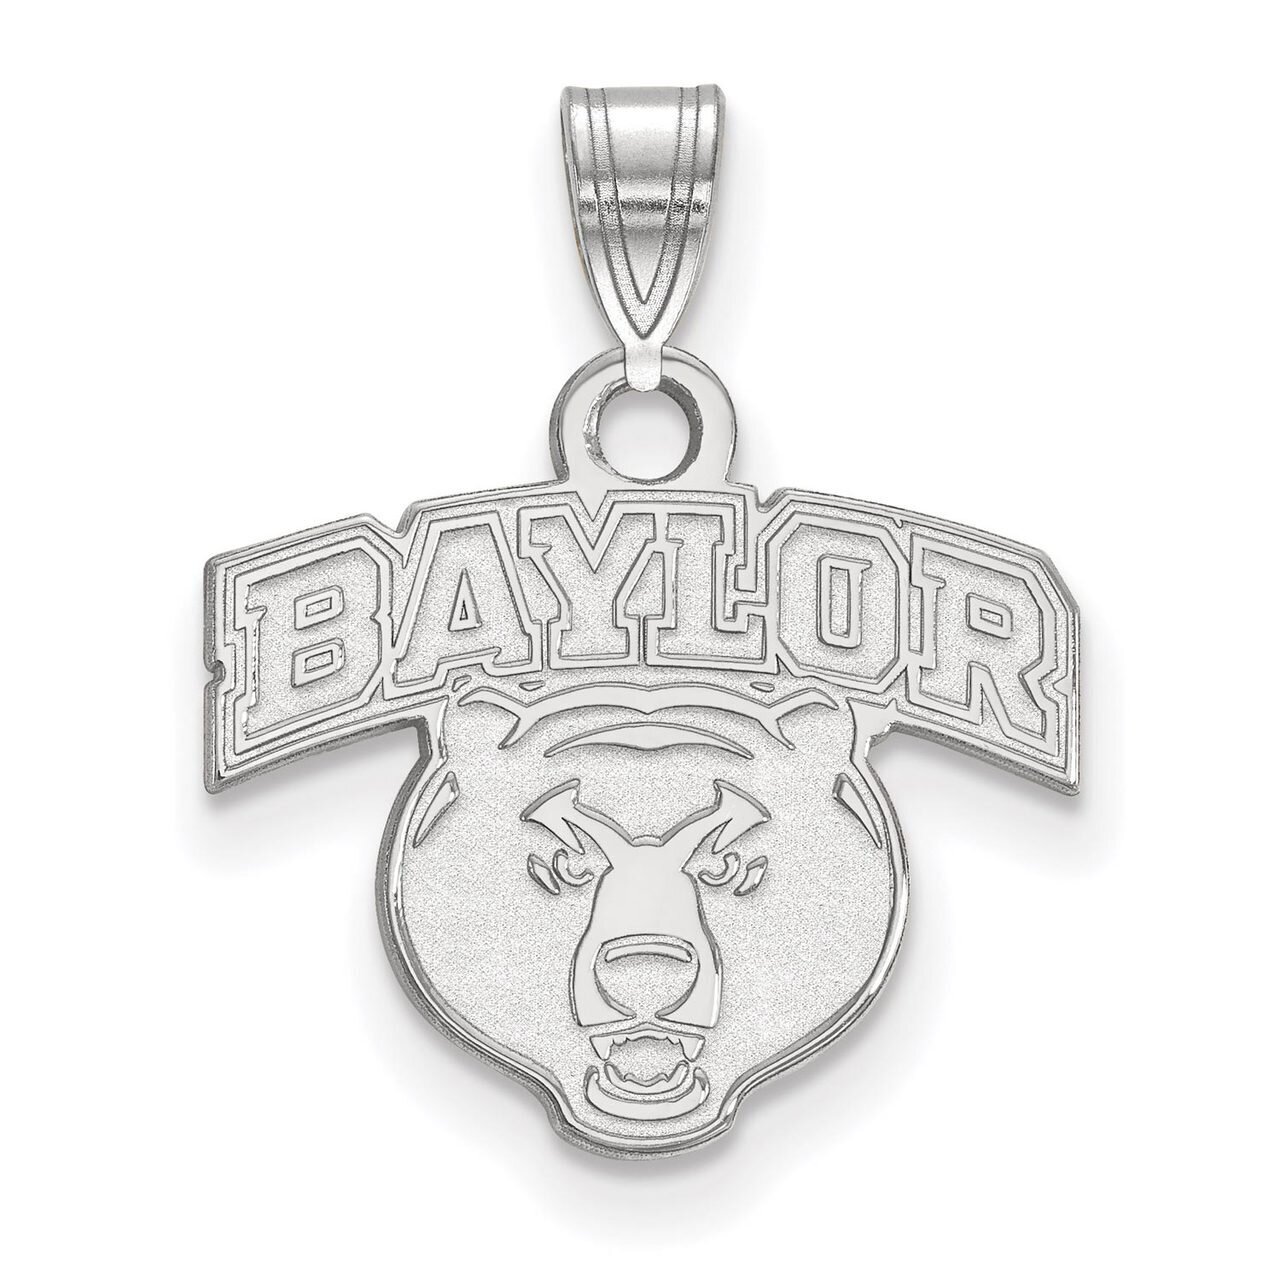 Baylor University Small Pendant Sterling Silver SS023BU